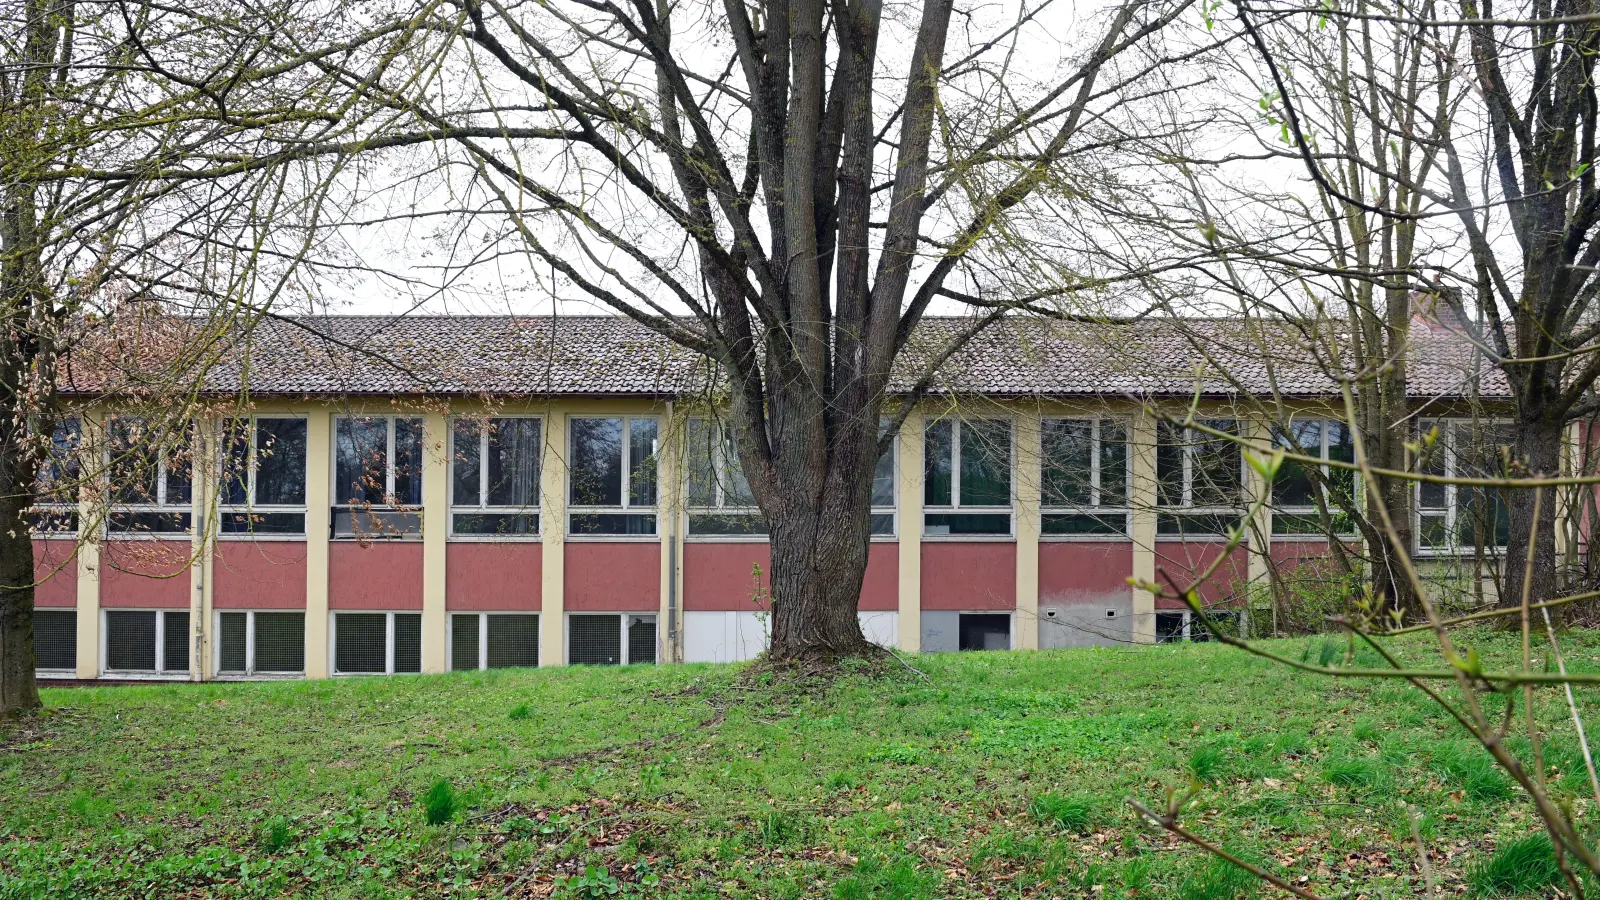 Um diese Flatterulme auf dem ehemaligen Schulgelände in Obereichenbach wurde 2022 lebhaft gestritten. Der Baum steht bis heute – die alte Schule aber auch. (Archivfoto: Jim Albright)